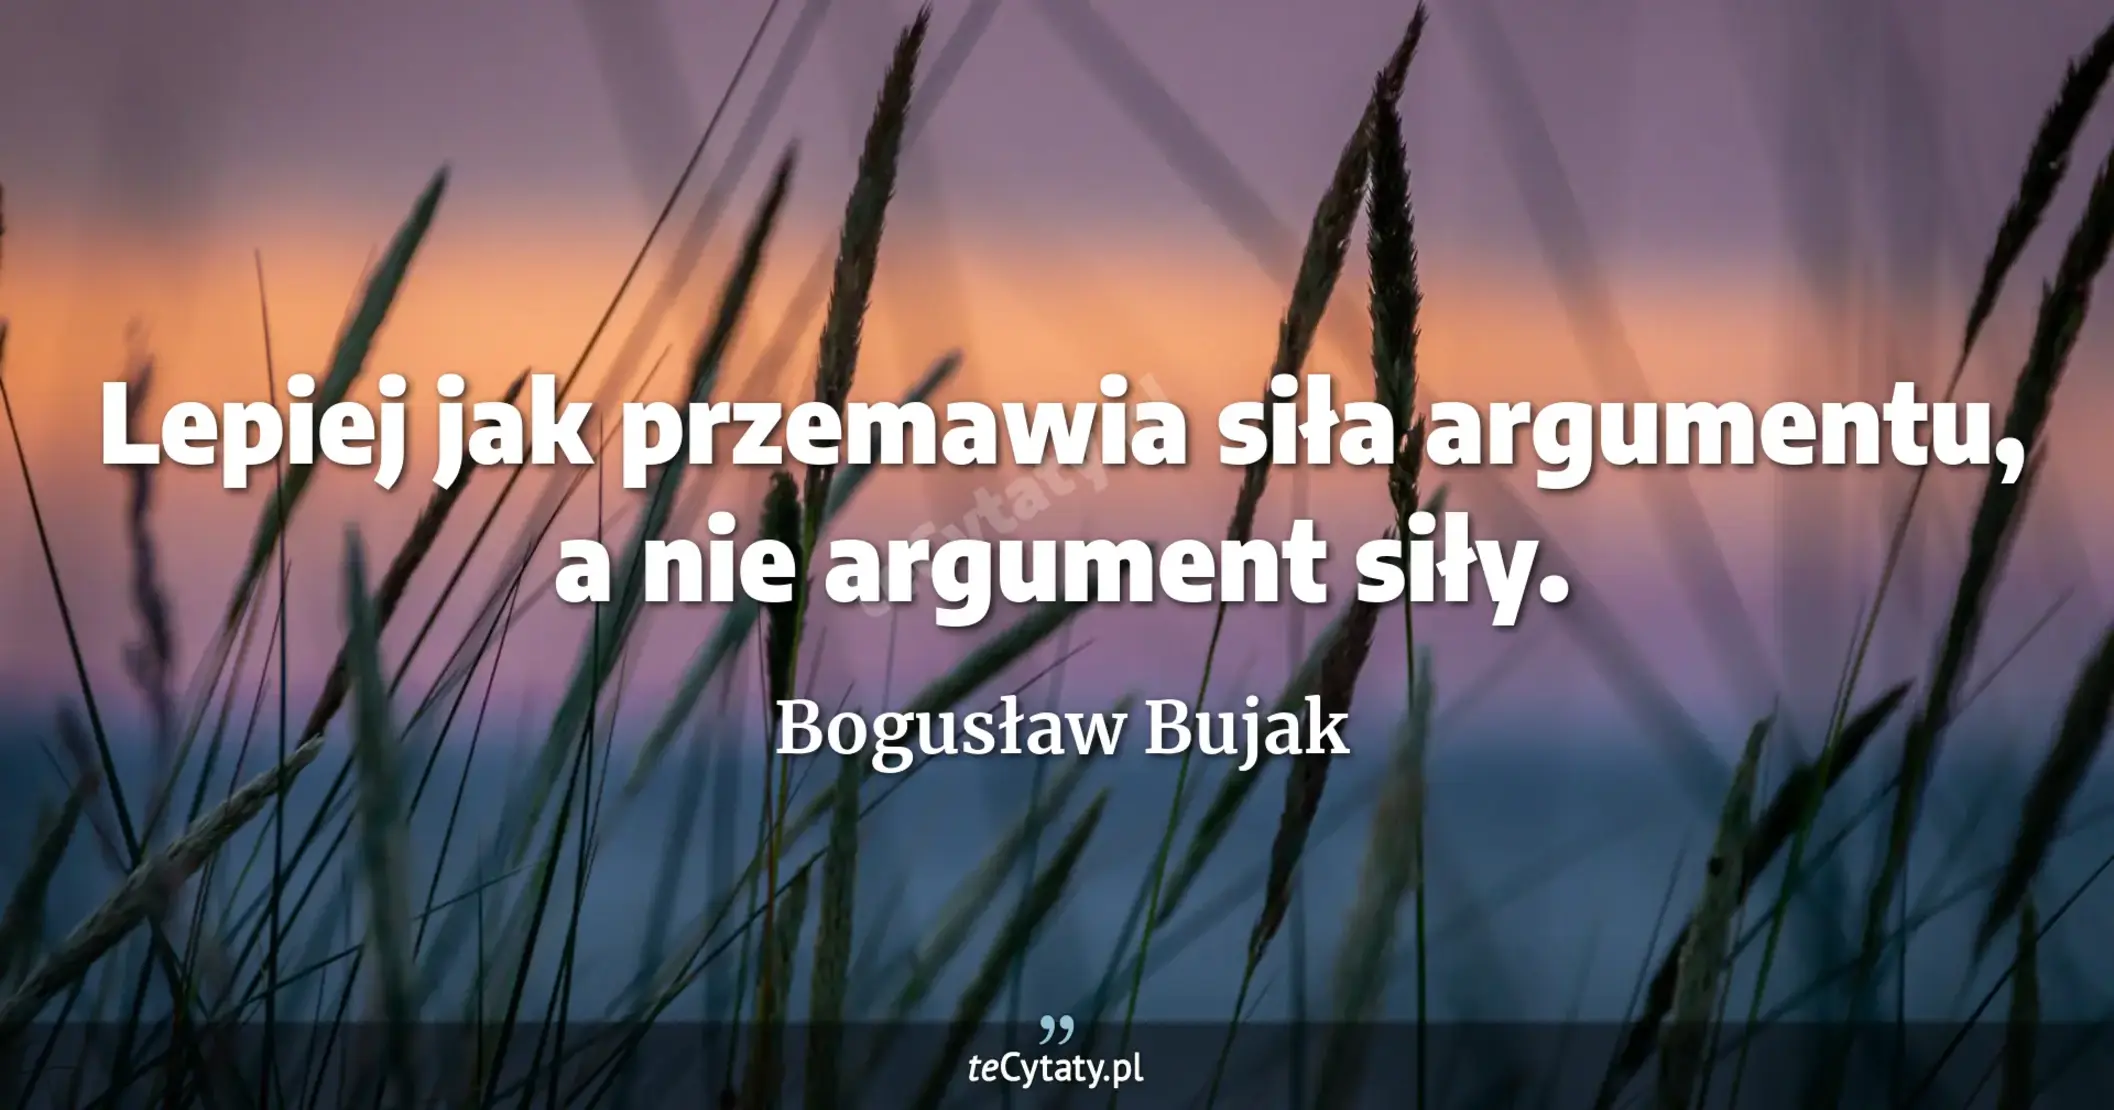 Lepiej jak przemawia siła argumentu, a nie argument siły. - Bogusław Bujak